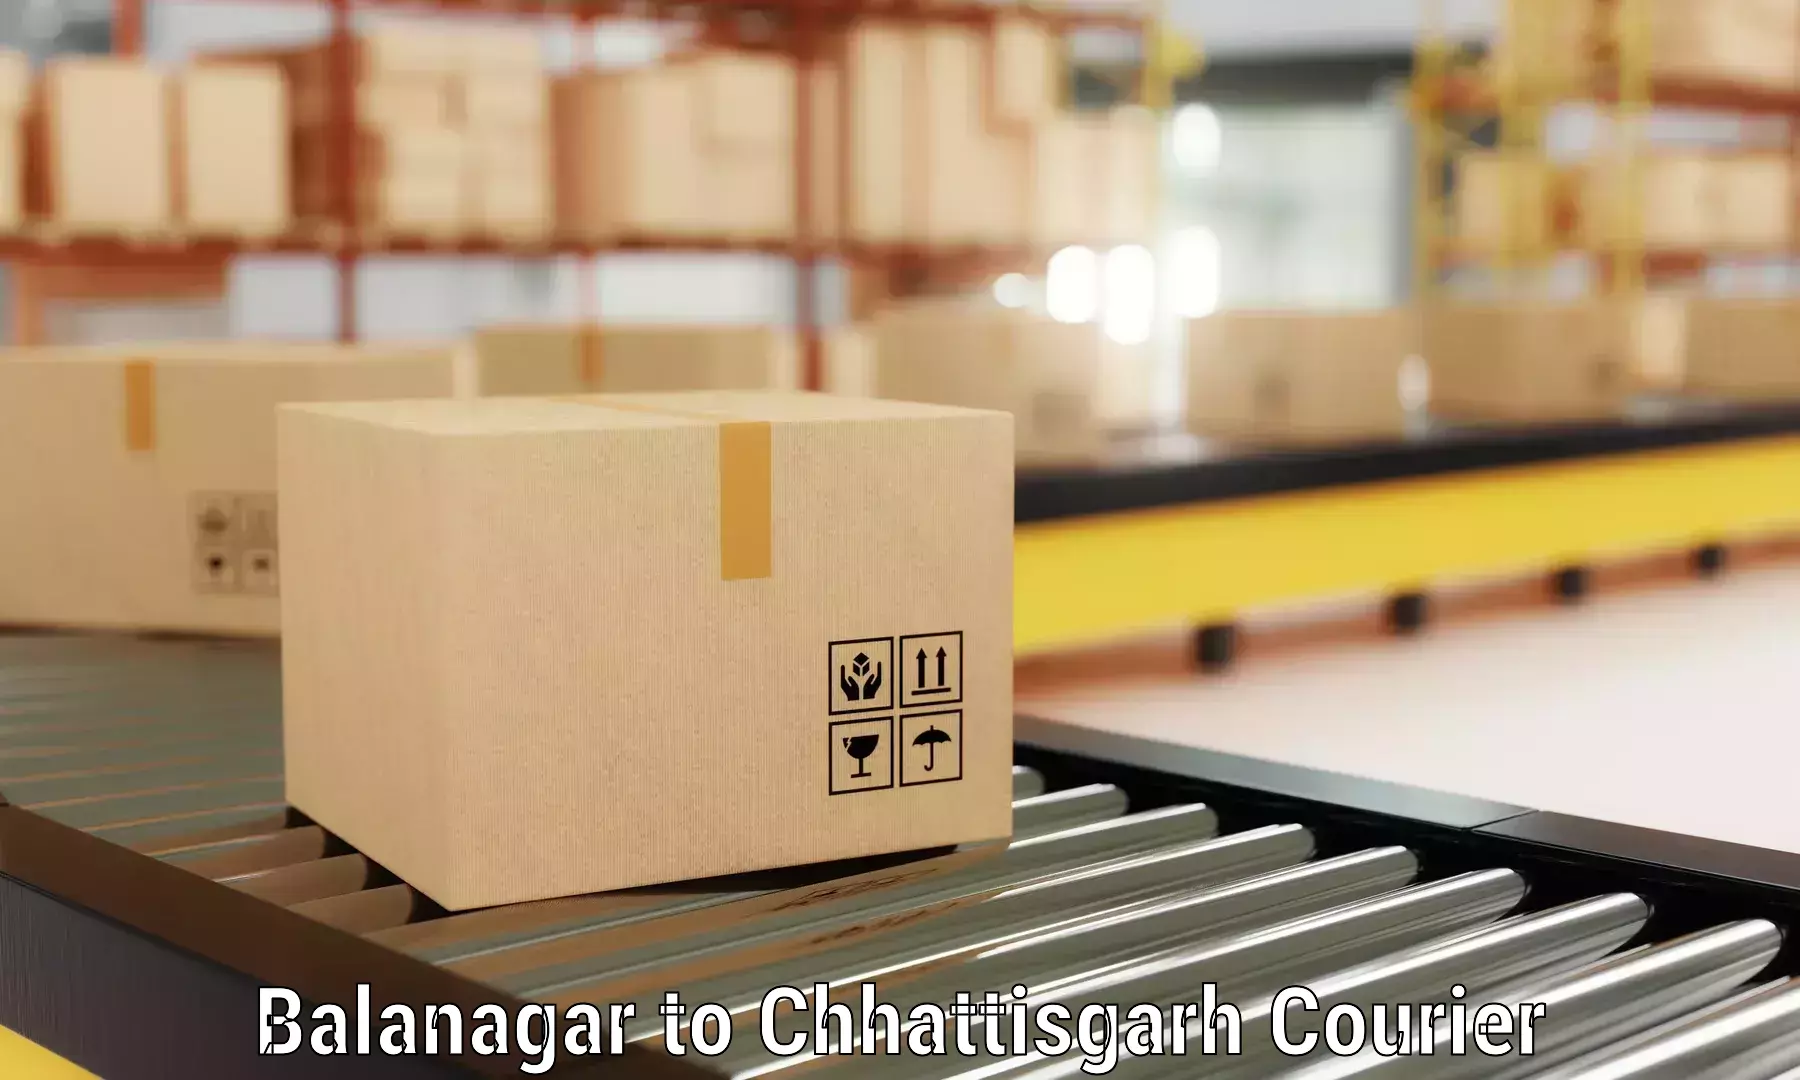 Furniture transport and logistics Balanagar to Raigarh